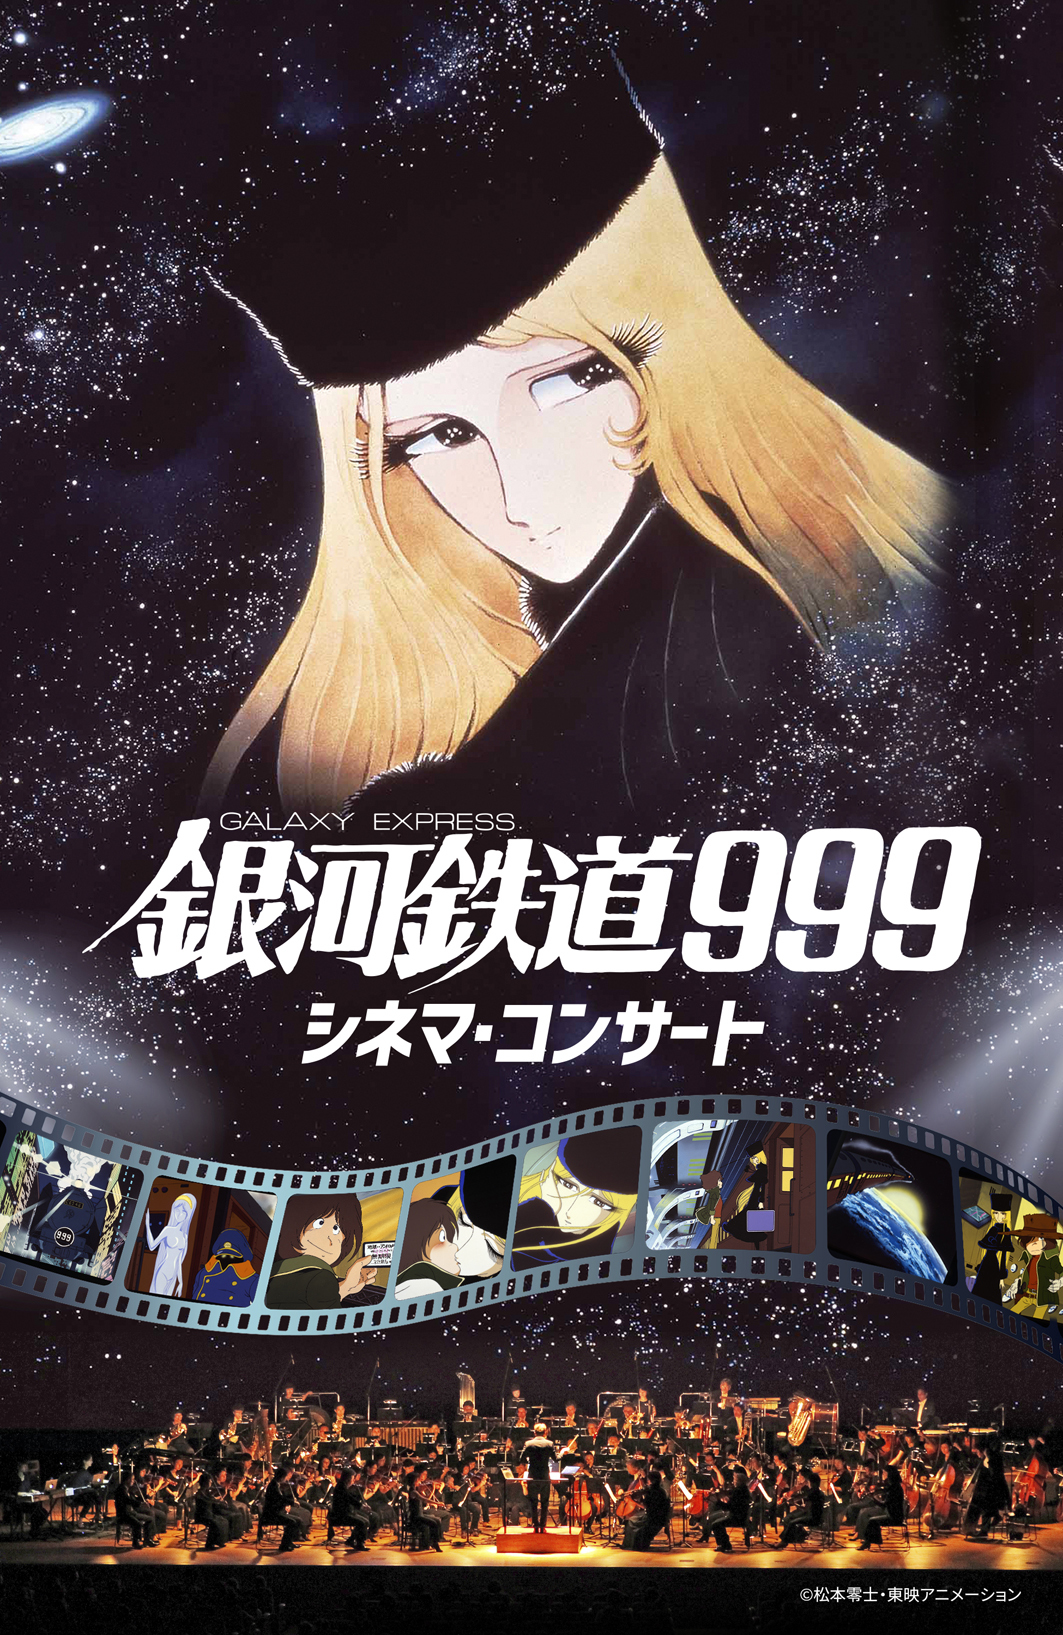 『銀河鉄道999 シネマ・コンサート』